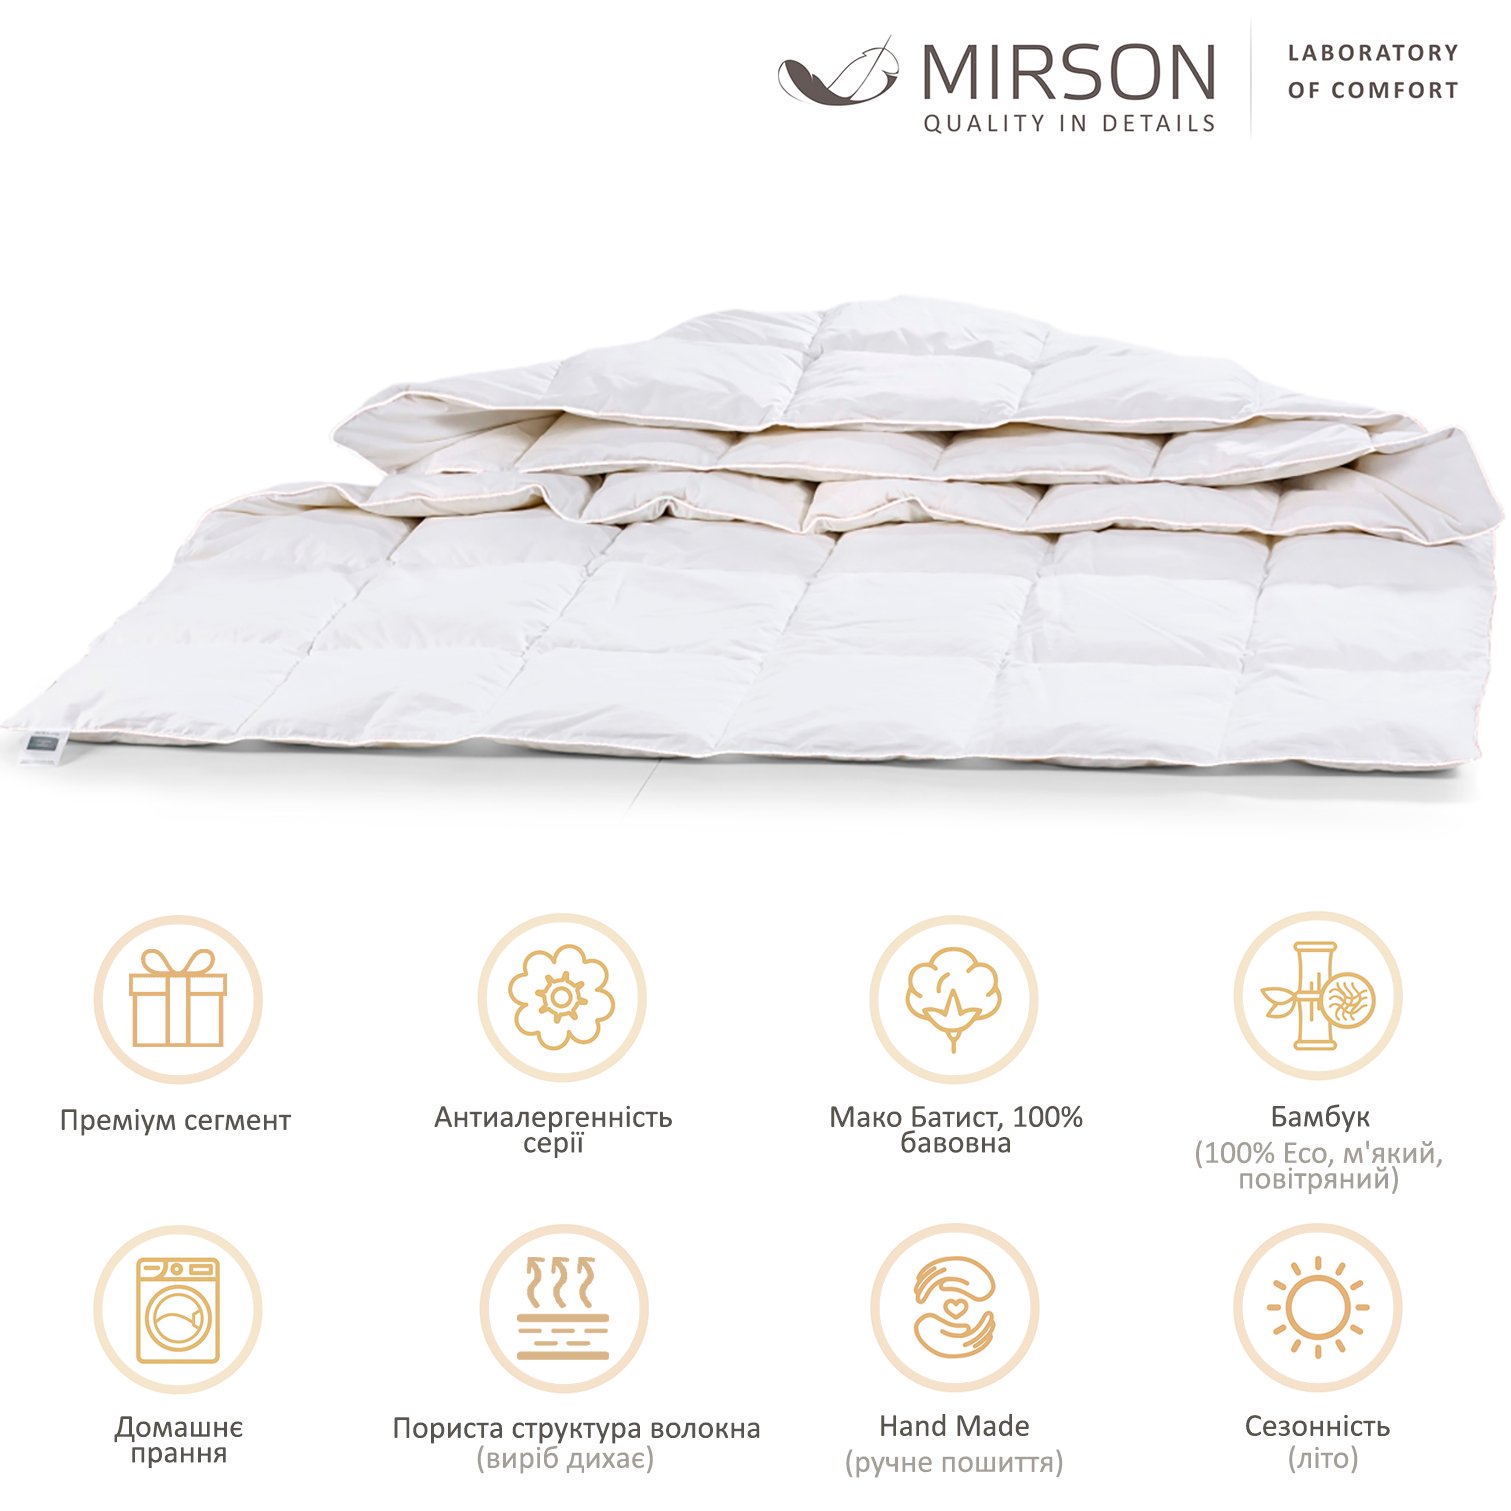 Ковдра бамбукова MirSon Luxury Exclusive №1375, літня, 140x205 см, біла - фото 6